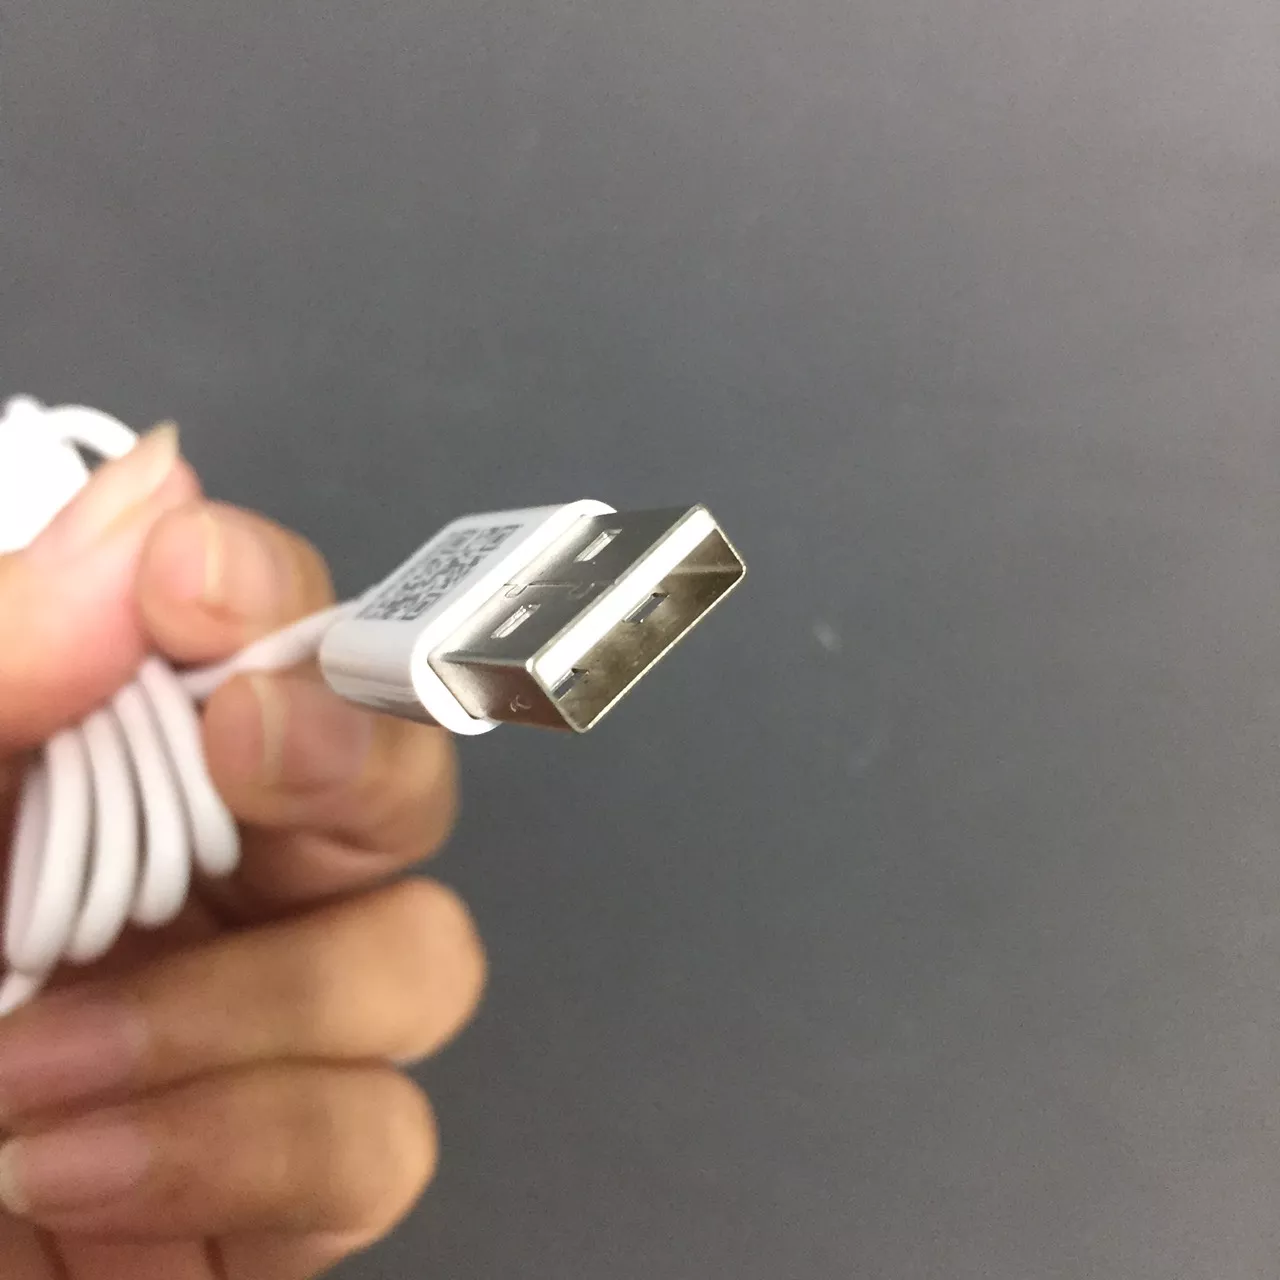 Cáp sạc cho ip 2.4A dây trắng nhỏ giống dây nguyên bản  thương hiệu Pisen AL05 (90cm) _ Hàng chính hãng